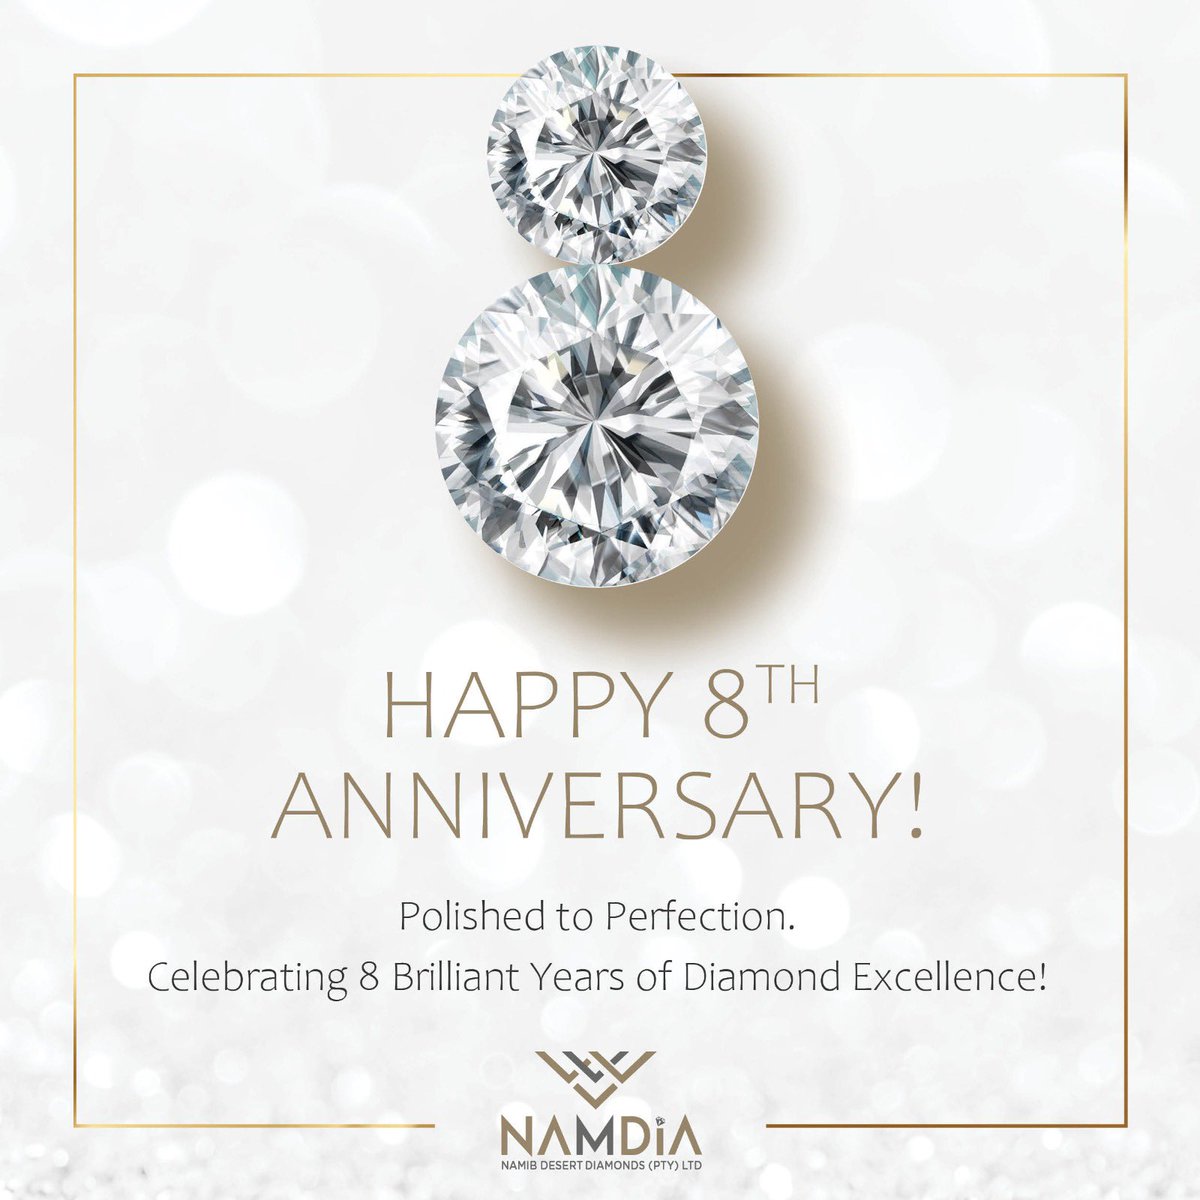 HAPPY 8th NAMDIA. #namdia #naturaldiamonds #roughdiamonds #namibiaqueenofdiamonds